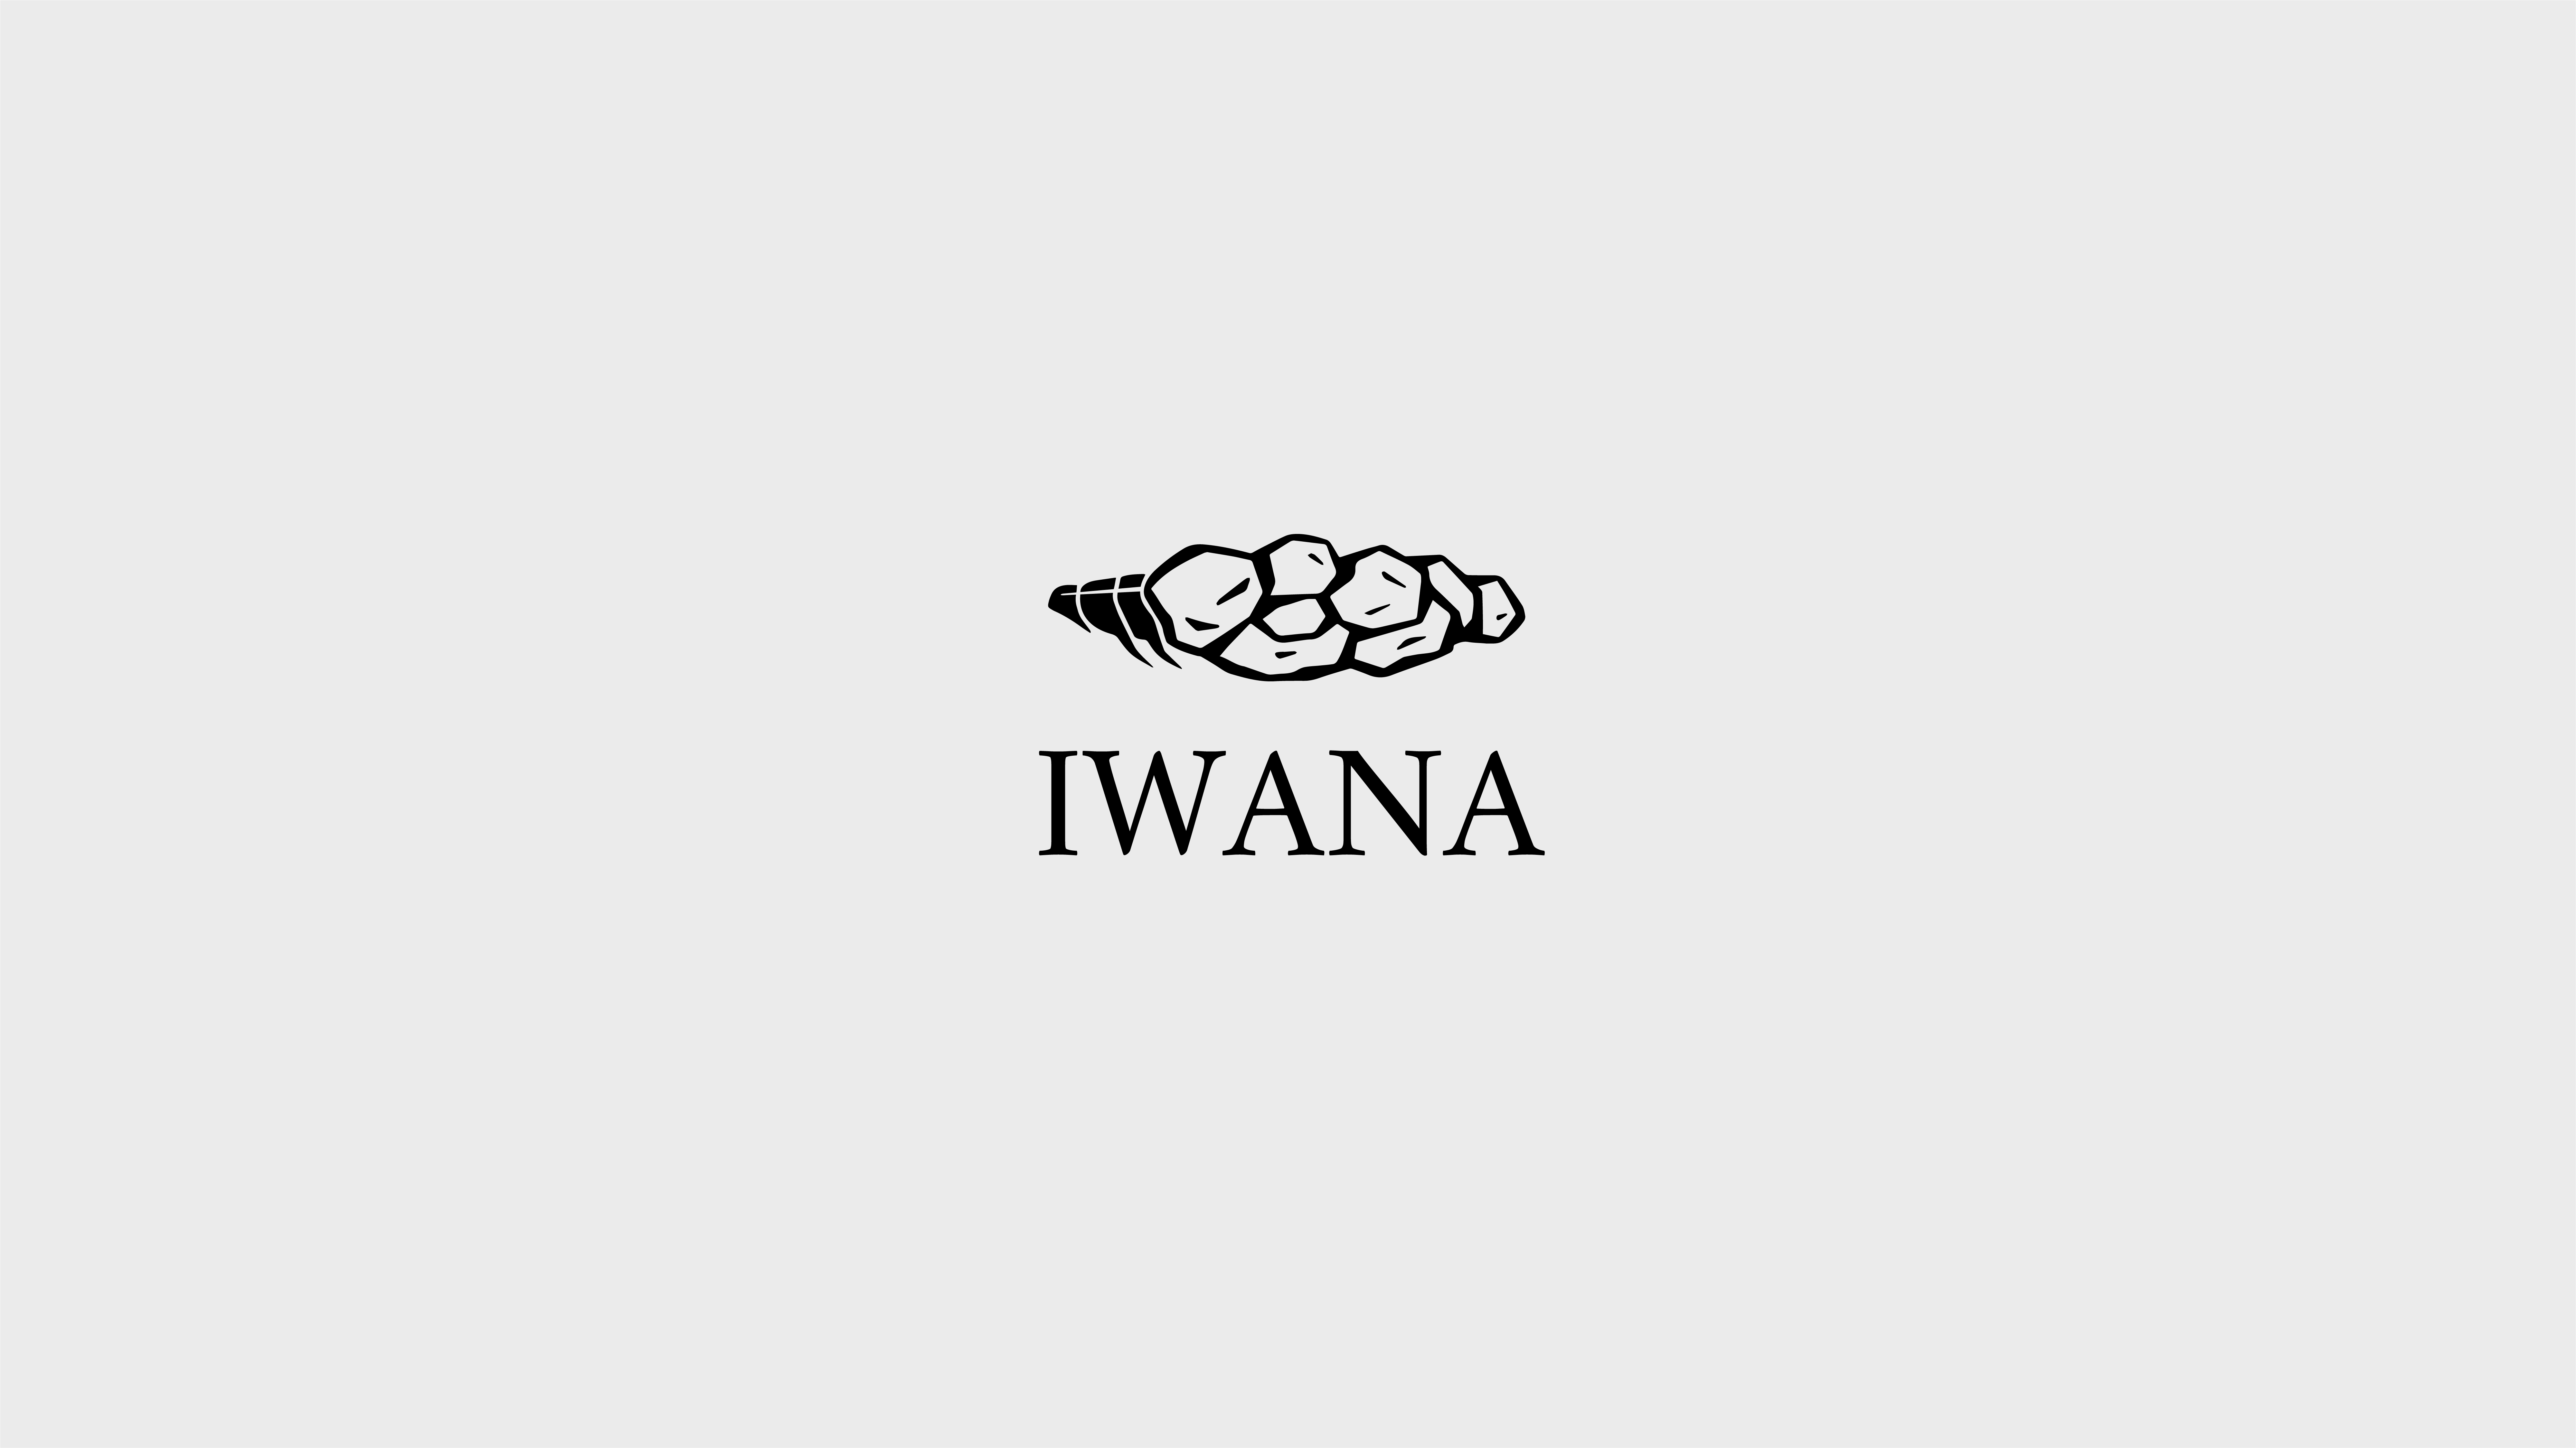 Iwana